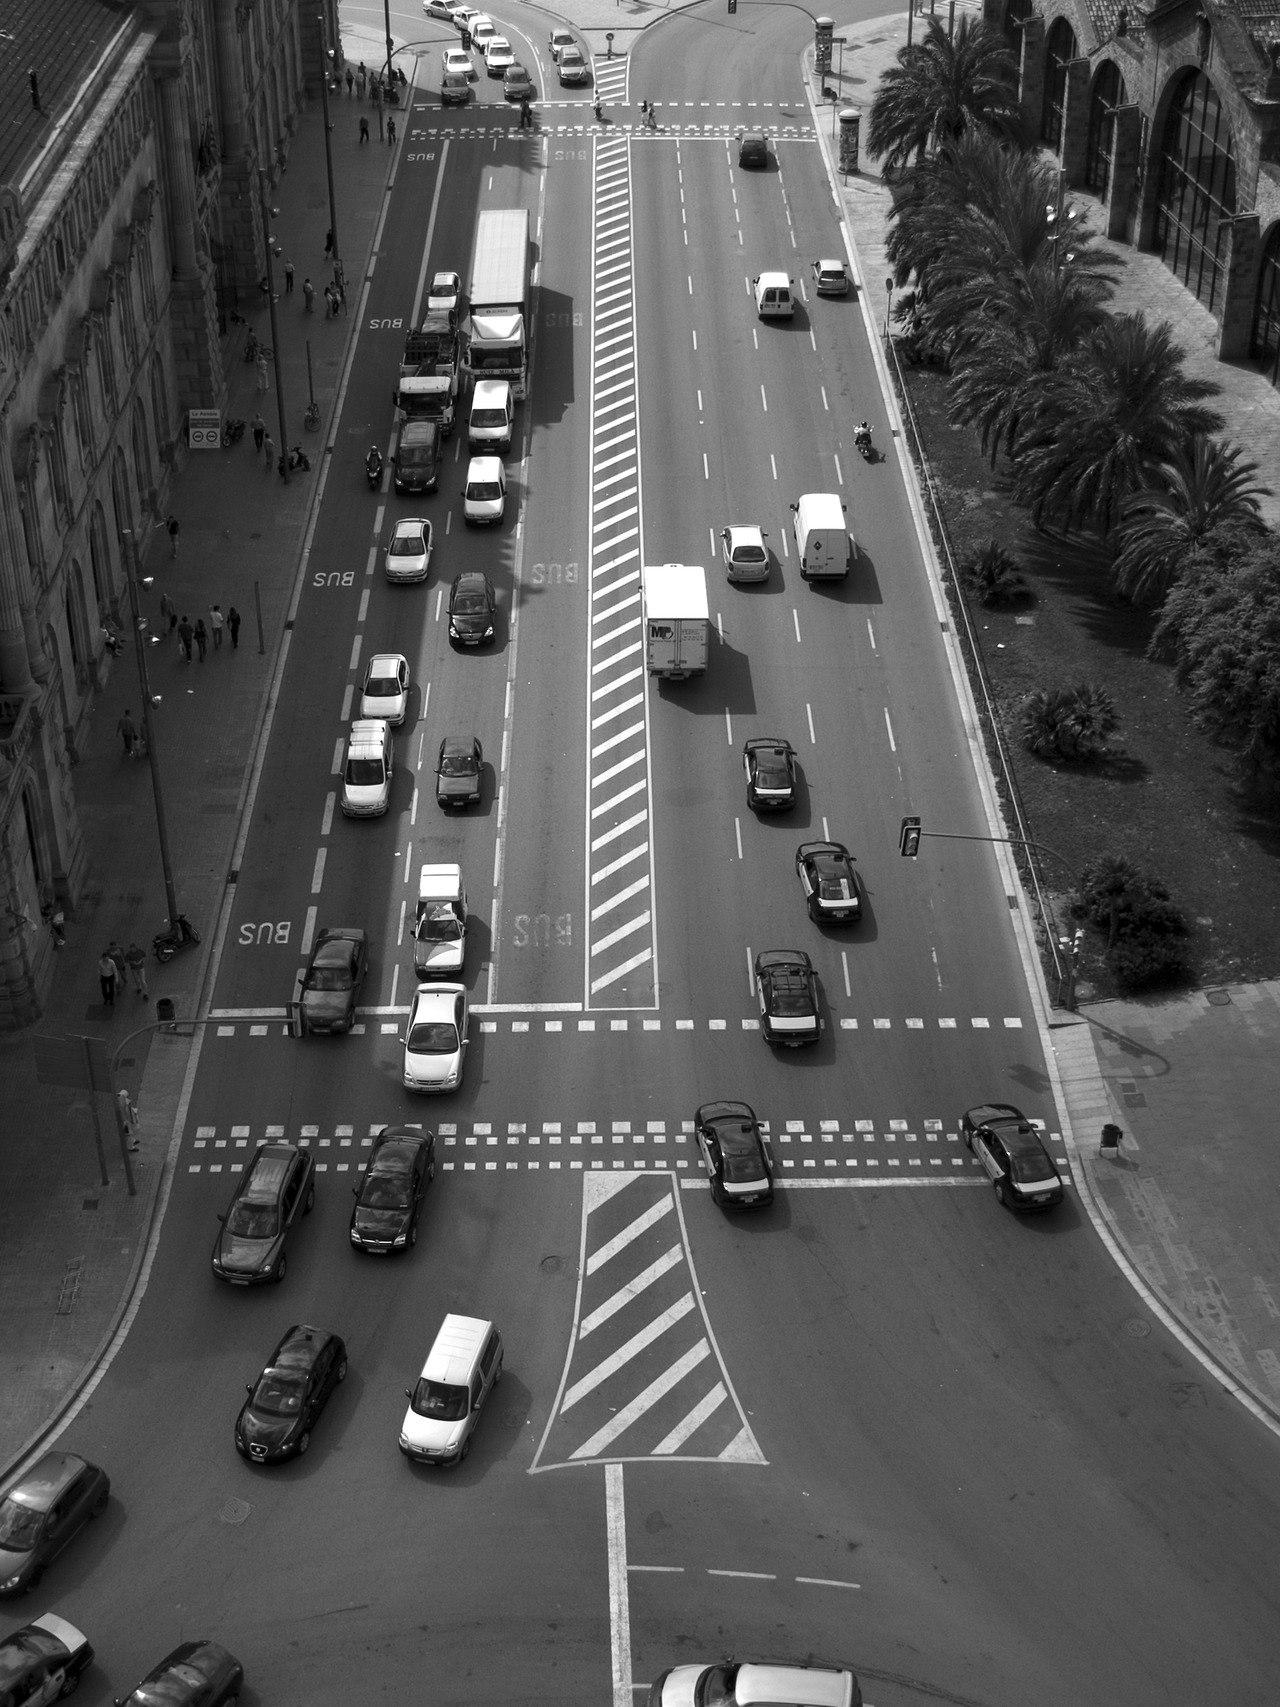 birds eye view of vehicles on road between buildings